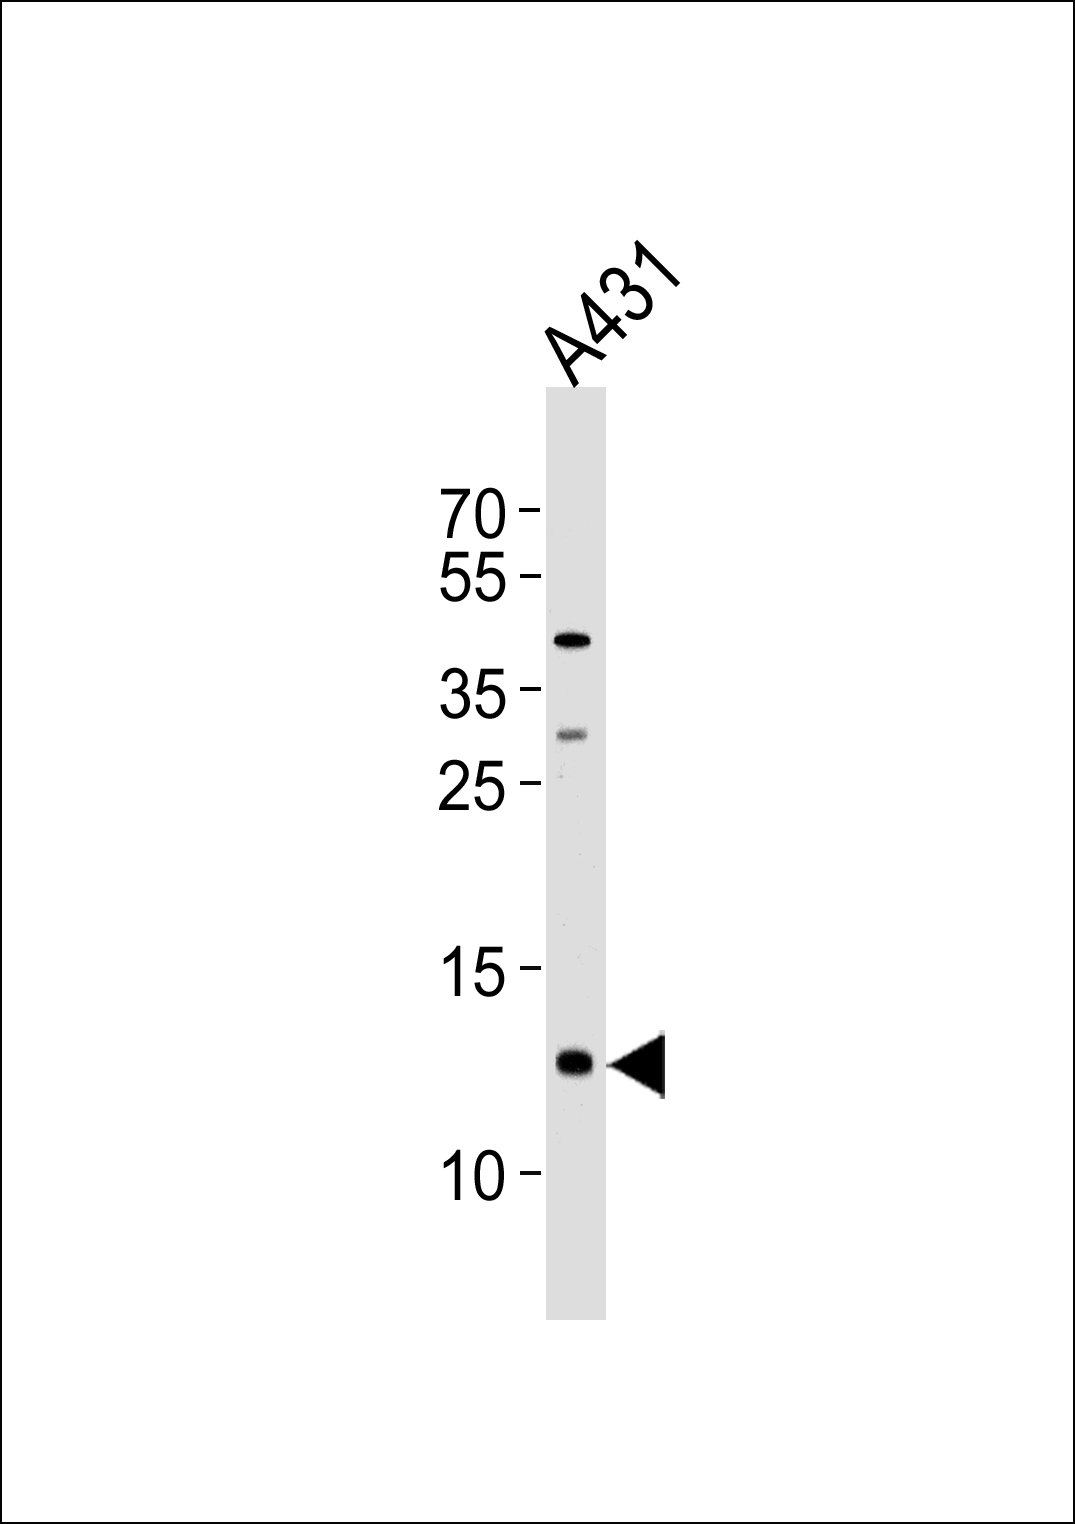 SPRR2A antibody - C-terminal region (OAAB00776) in A431 using Western Blot